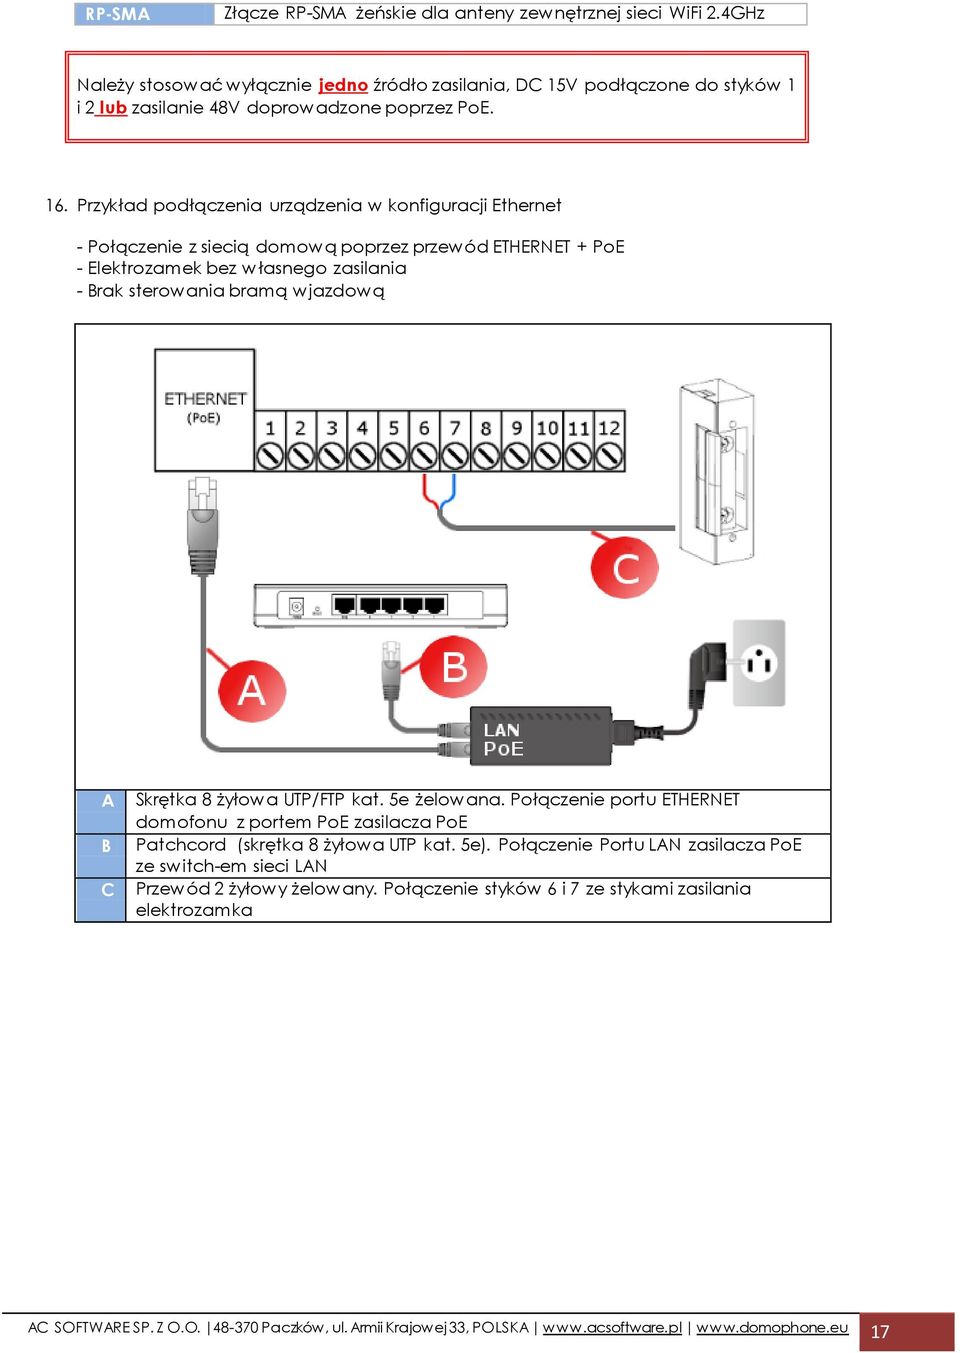 Skrętka 8 żyłowa UTP/FTP kat. 5e żelowana. Połączenie portu ETHERNET domofonu z portem PoE zasilacza PoE Patchcord (skrętka 8 żyłowa UTP kat. 5e).